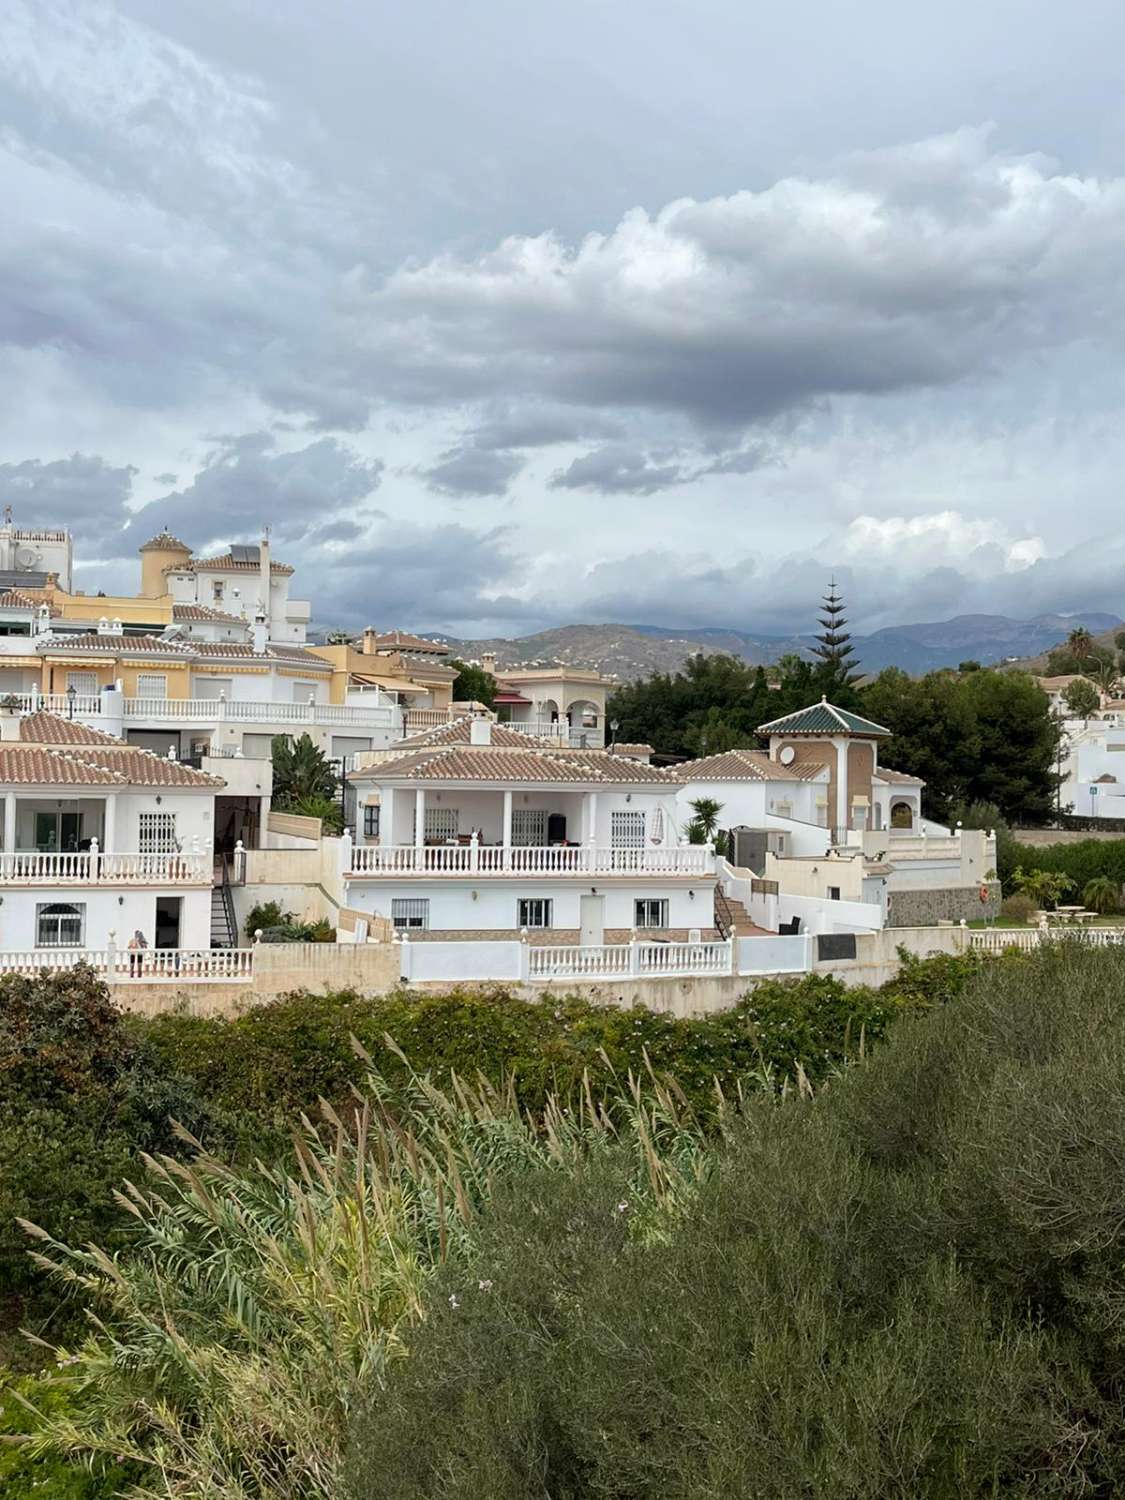 Prachtige villa nº 52, onafhankelijk bovenop een heuvel (Vistamar)